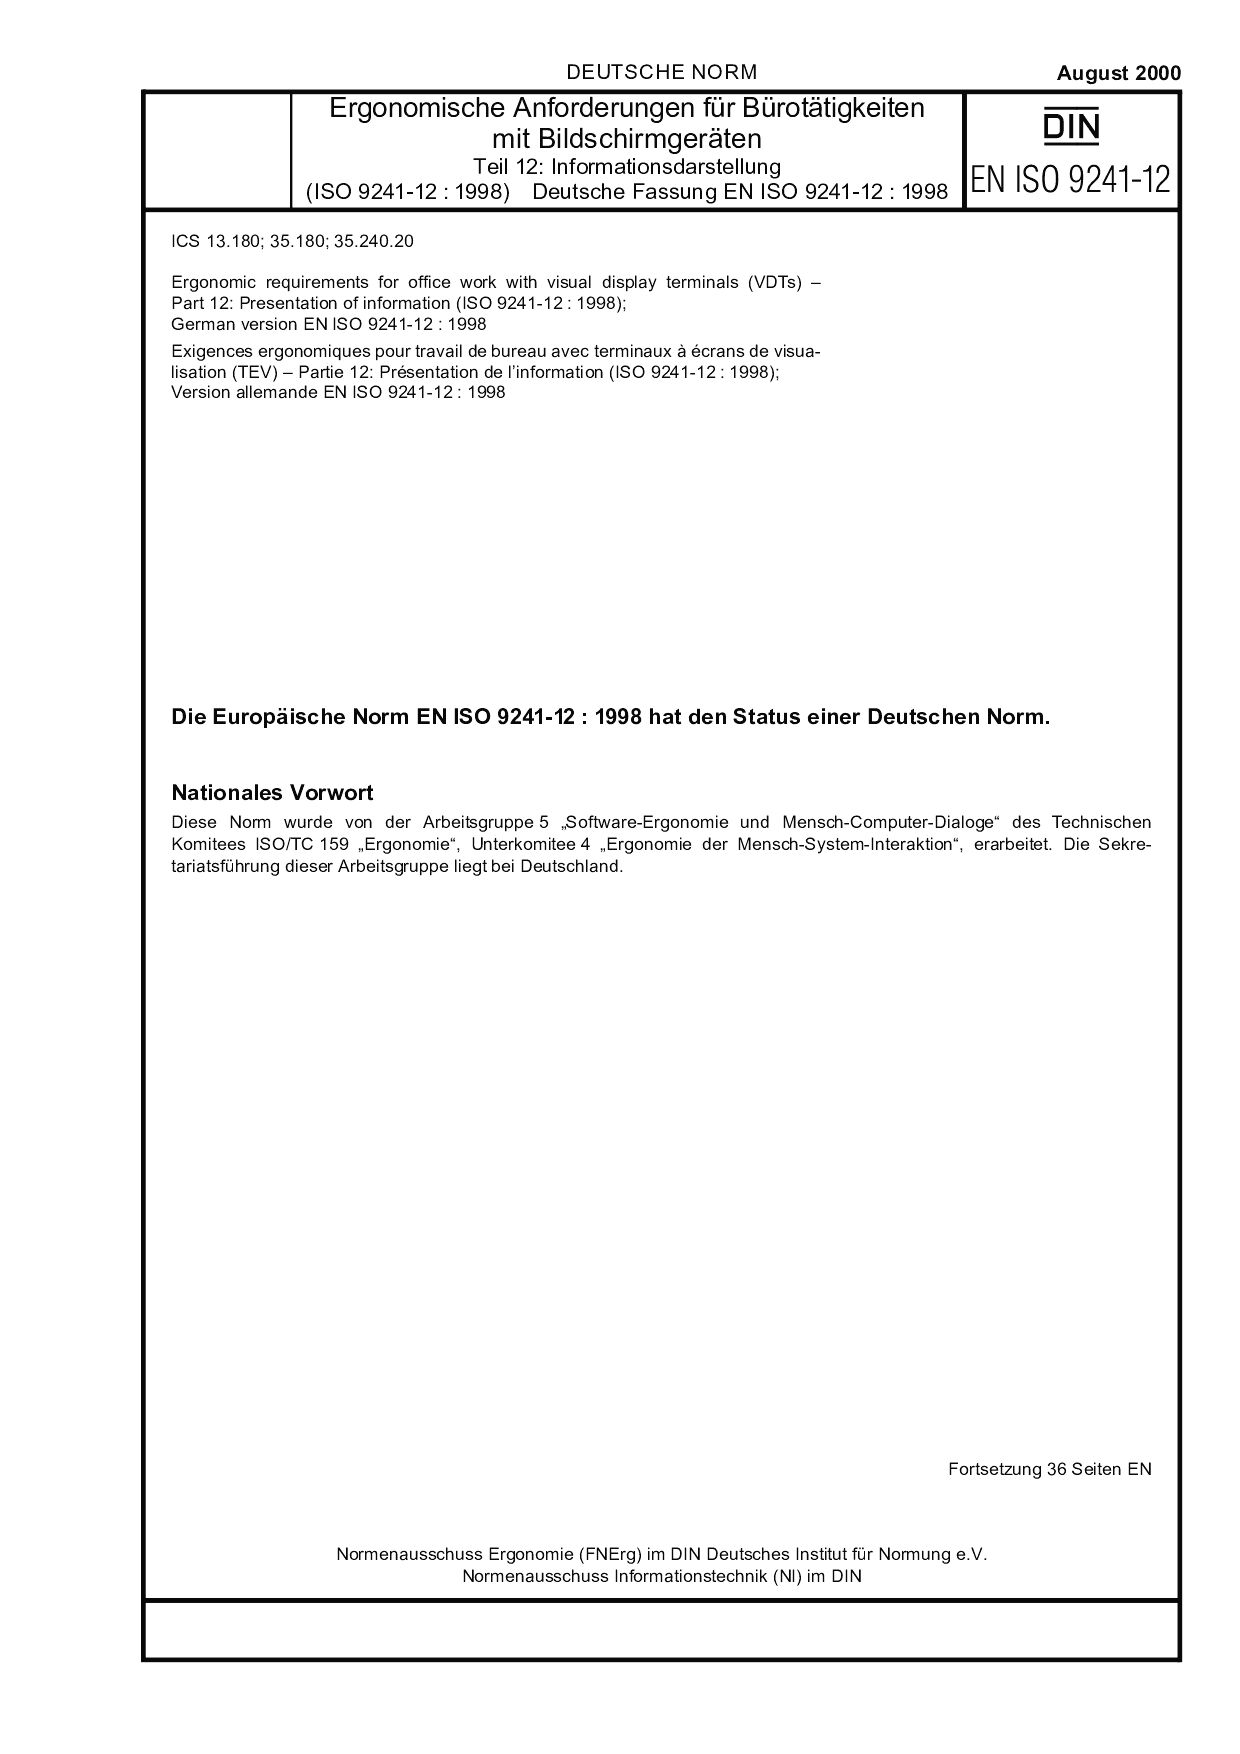 DIN EN ISO 9241-12:2000